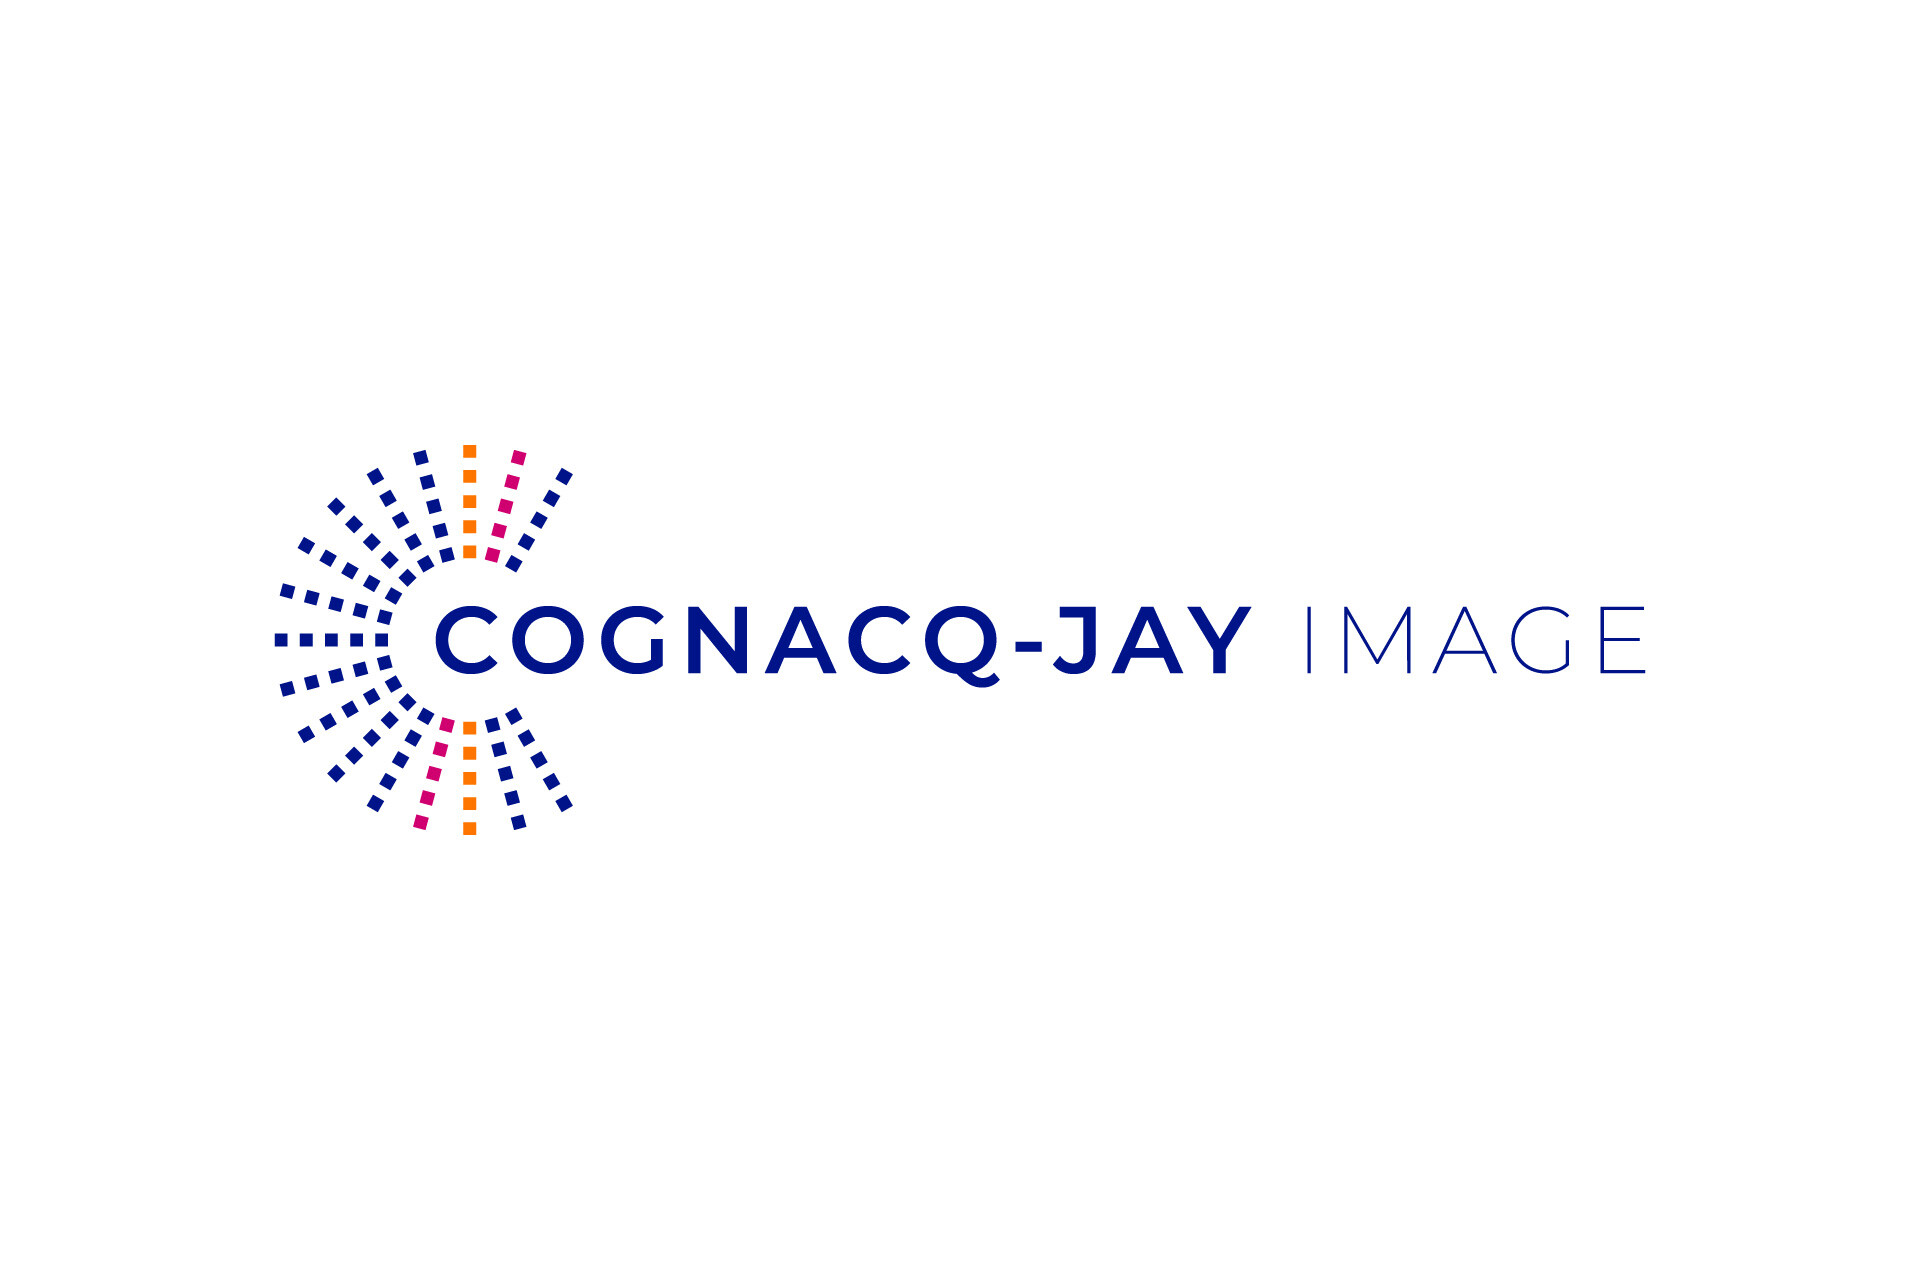 Nous accompagnons Cognacq-jay Image